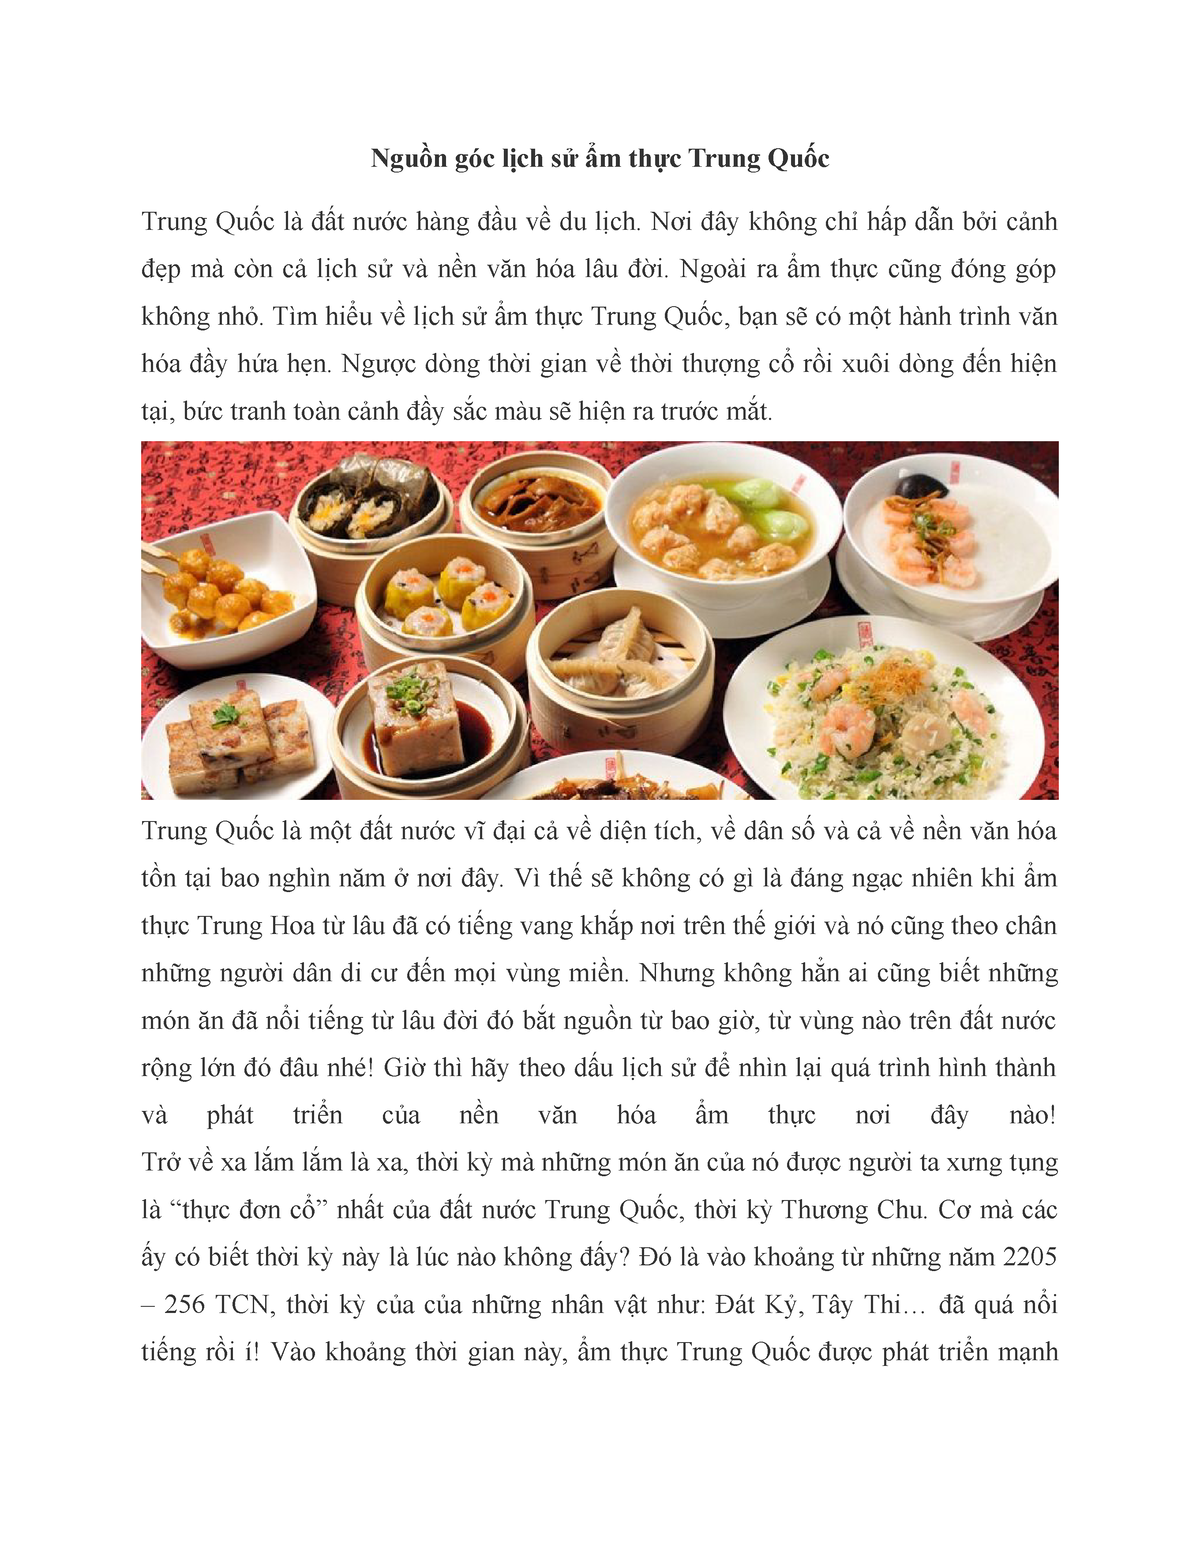 Dol K - hi pree - Nguồn góc lịch sử ẩm thực Trung Quốc Trung Quốc là đất nước hàng đầu về du lịch. - Studocu